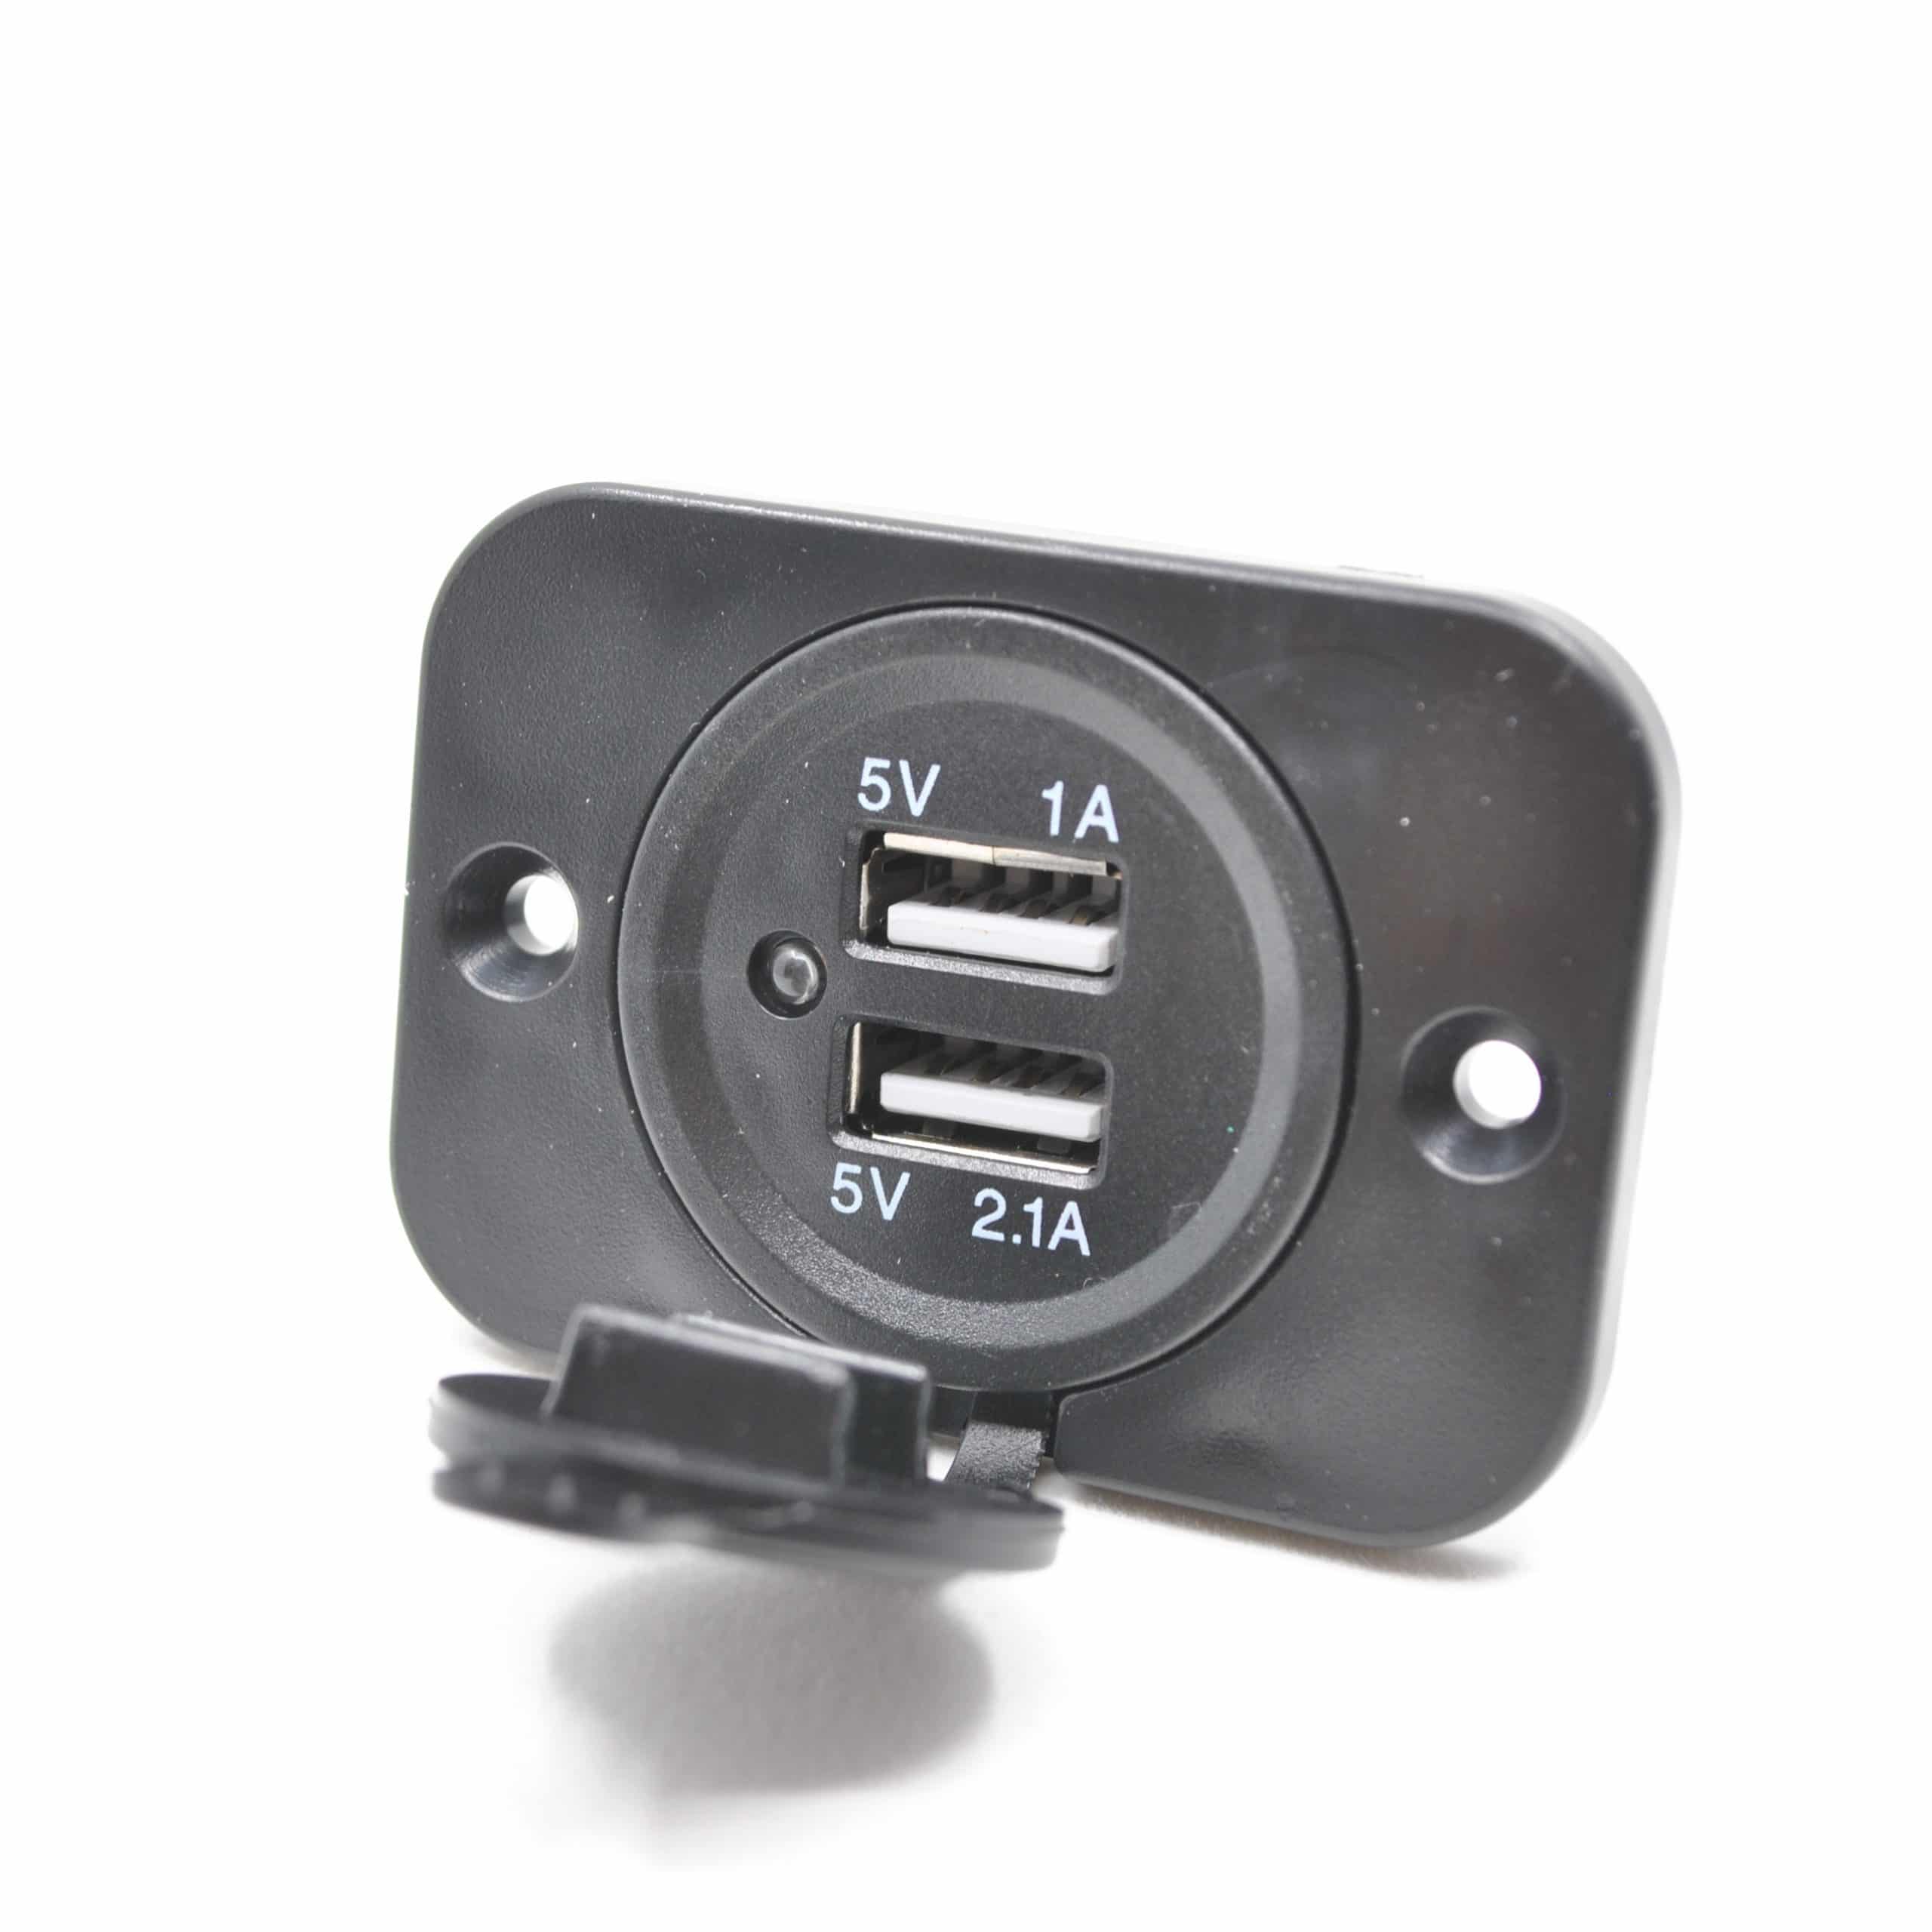 USB-Einbaudose 12 / 24 V mit Doppel-USB 2 x 2,5 A - Mit